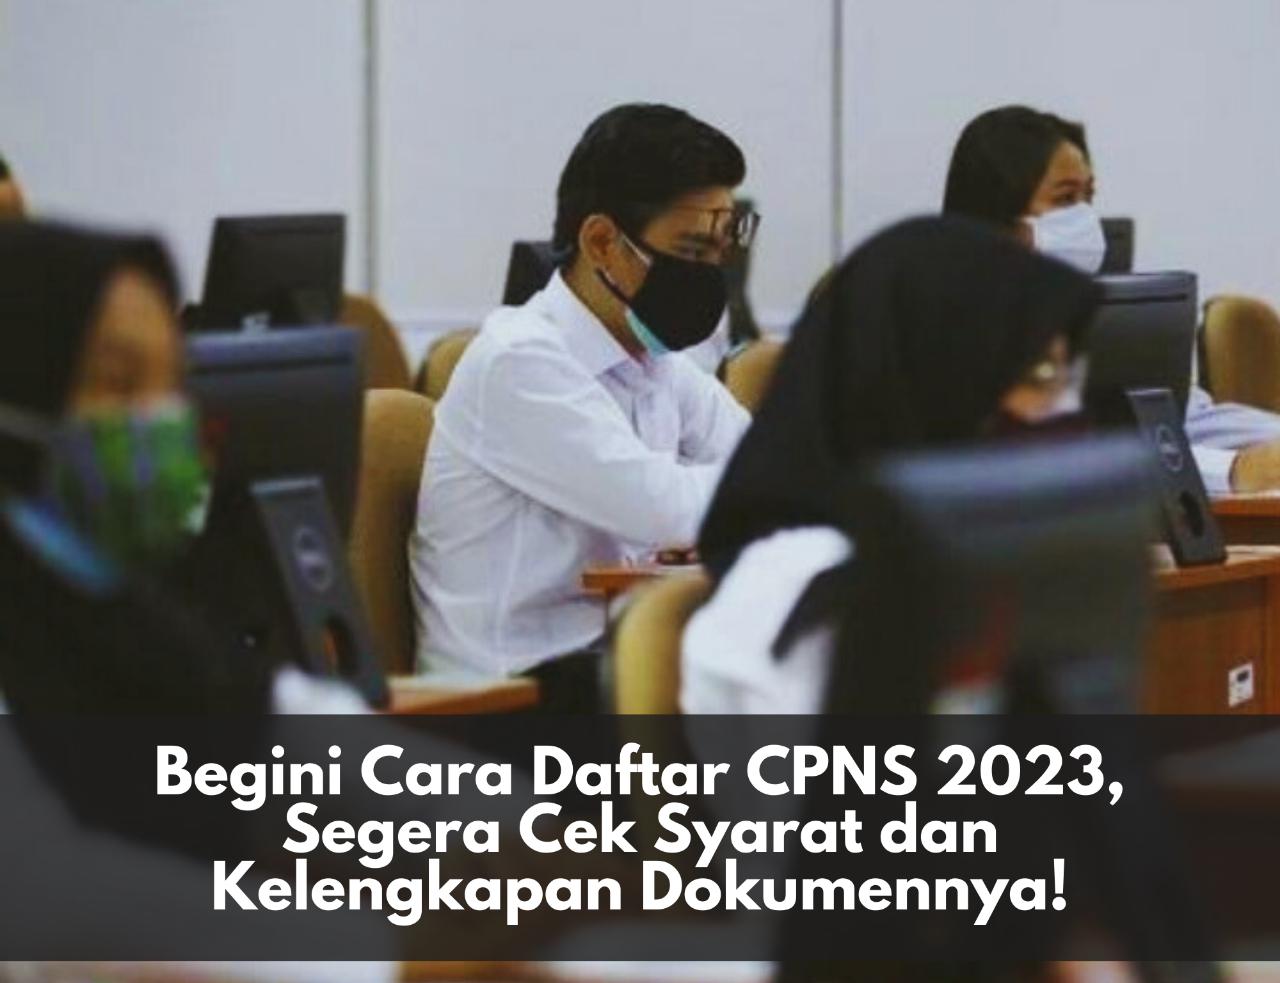 Begini Cara Daftar CPNS 2023, Segera Cek Syarat dan Kelengkapan Dokumennya!